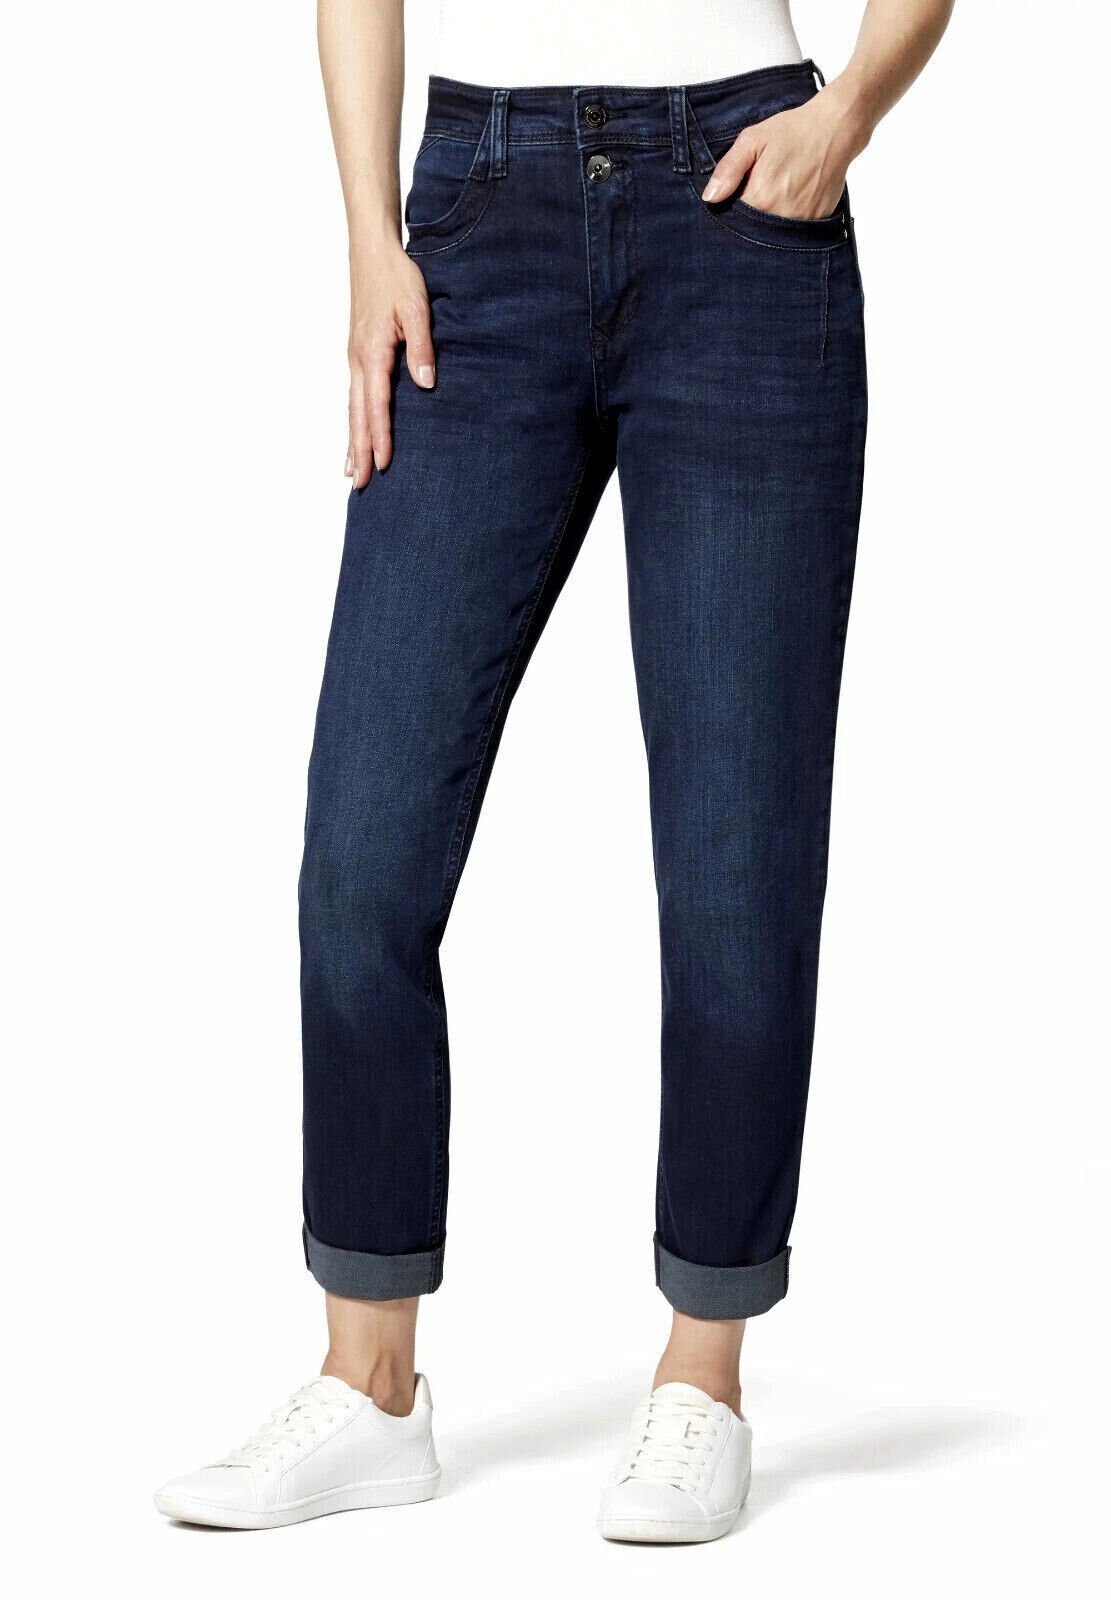 STOOKER WOMEN Boyfriend-Jeans DAVOS BOYFRIEND Blue - HOSE SLIM used JEANS FIT black